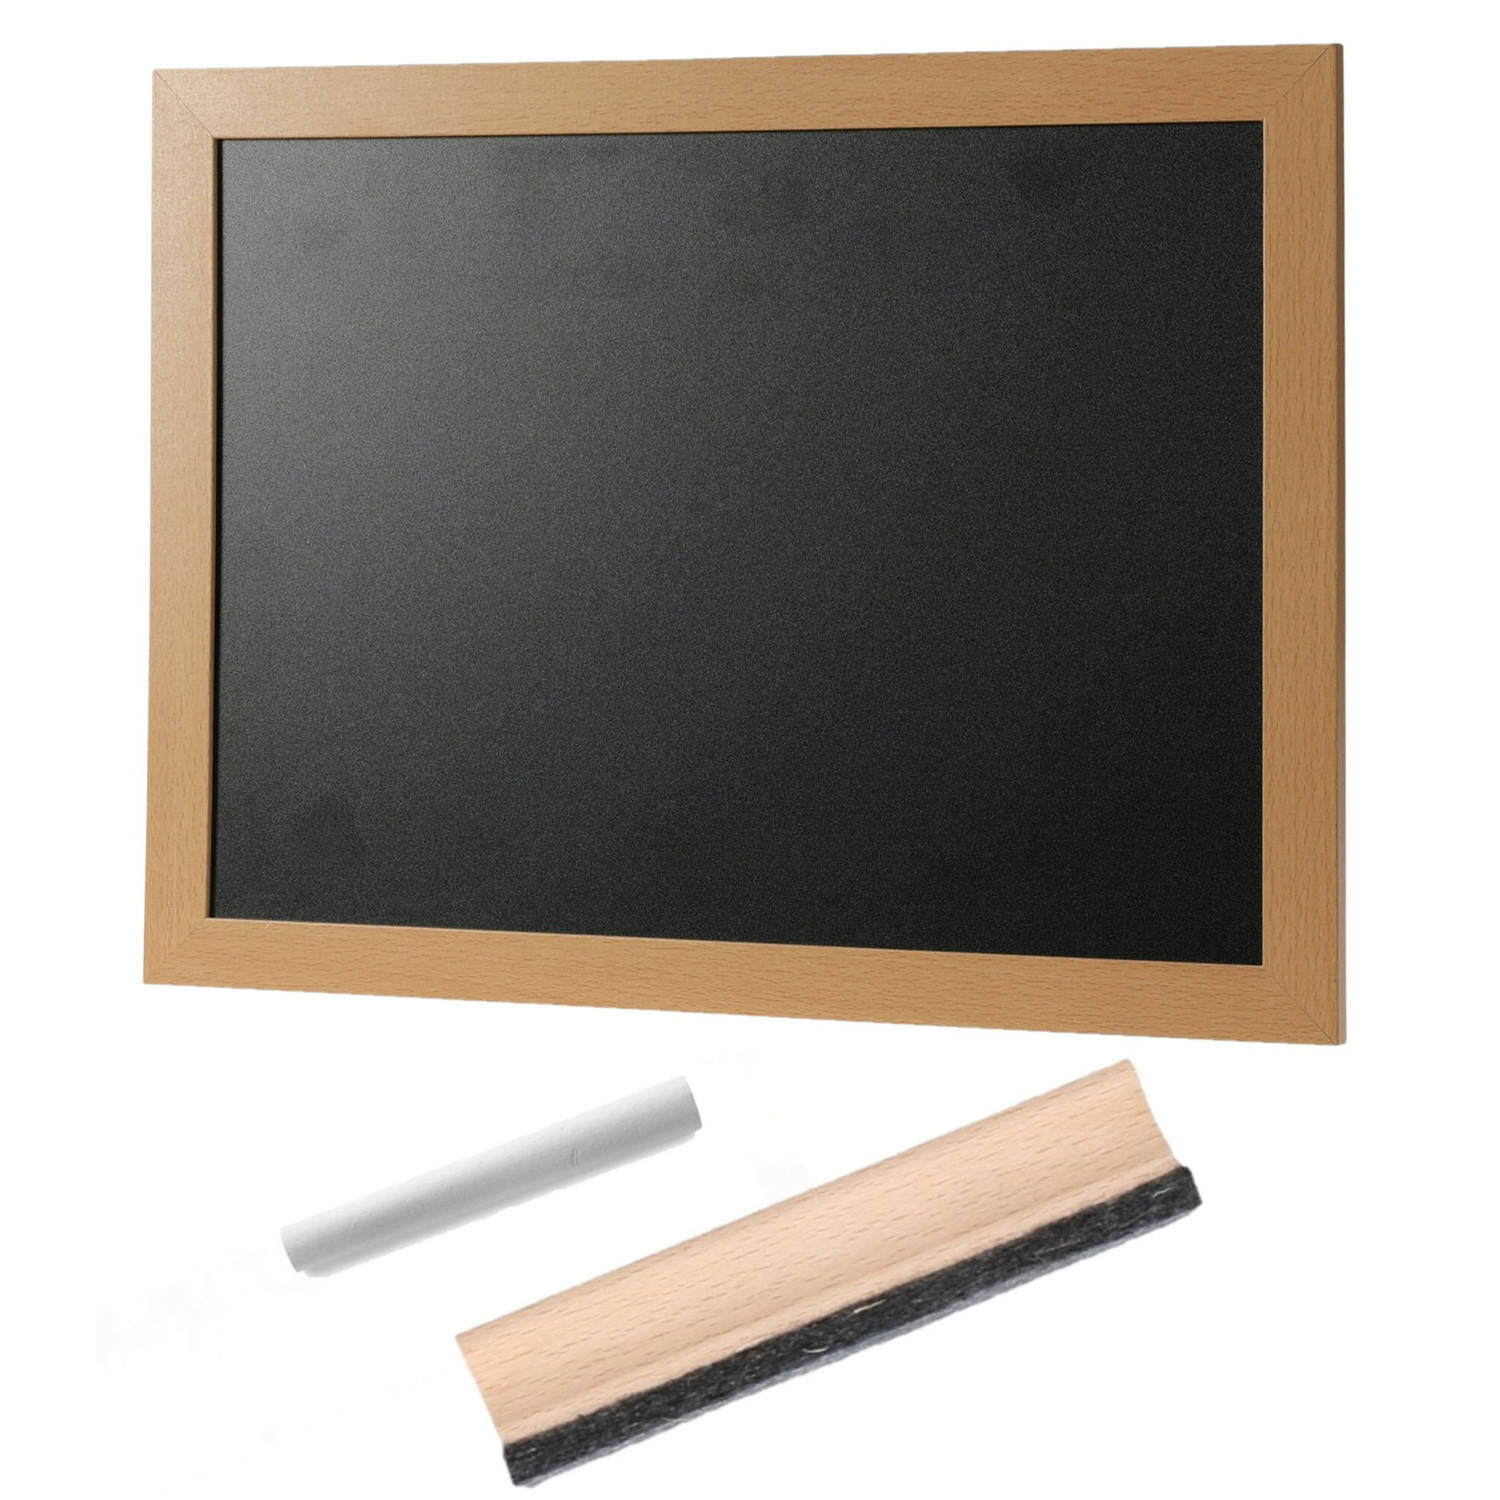 Schoolbord-krijtbord Incl. Krijtje Met Wisser 30 X 40 Cm Krijtborden